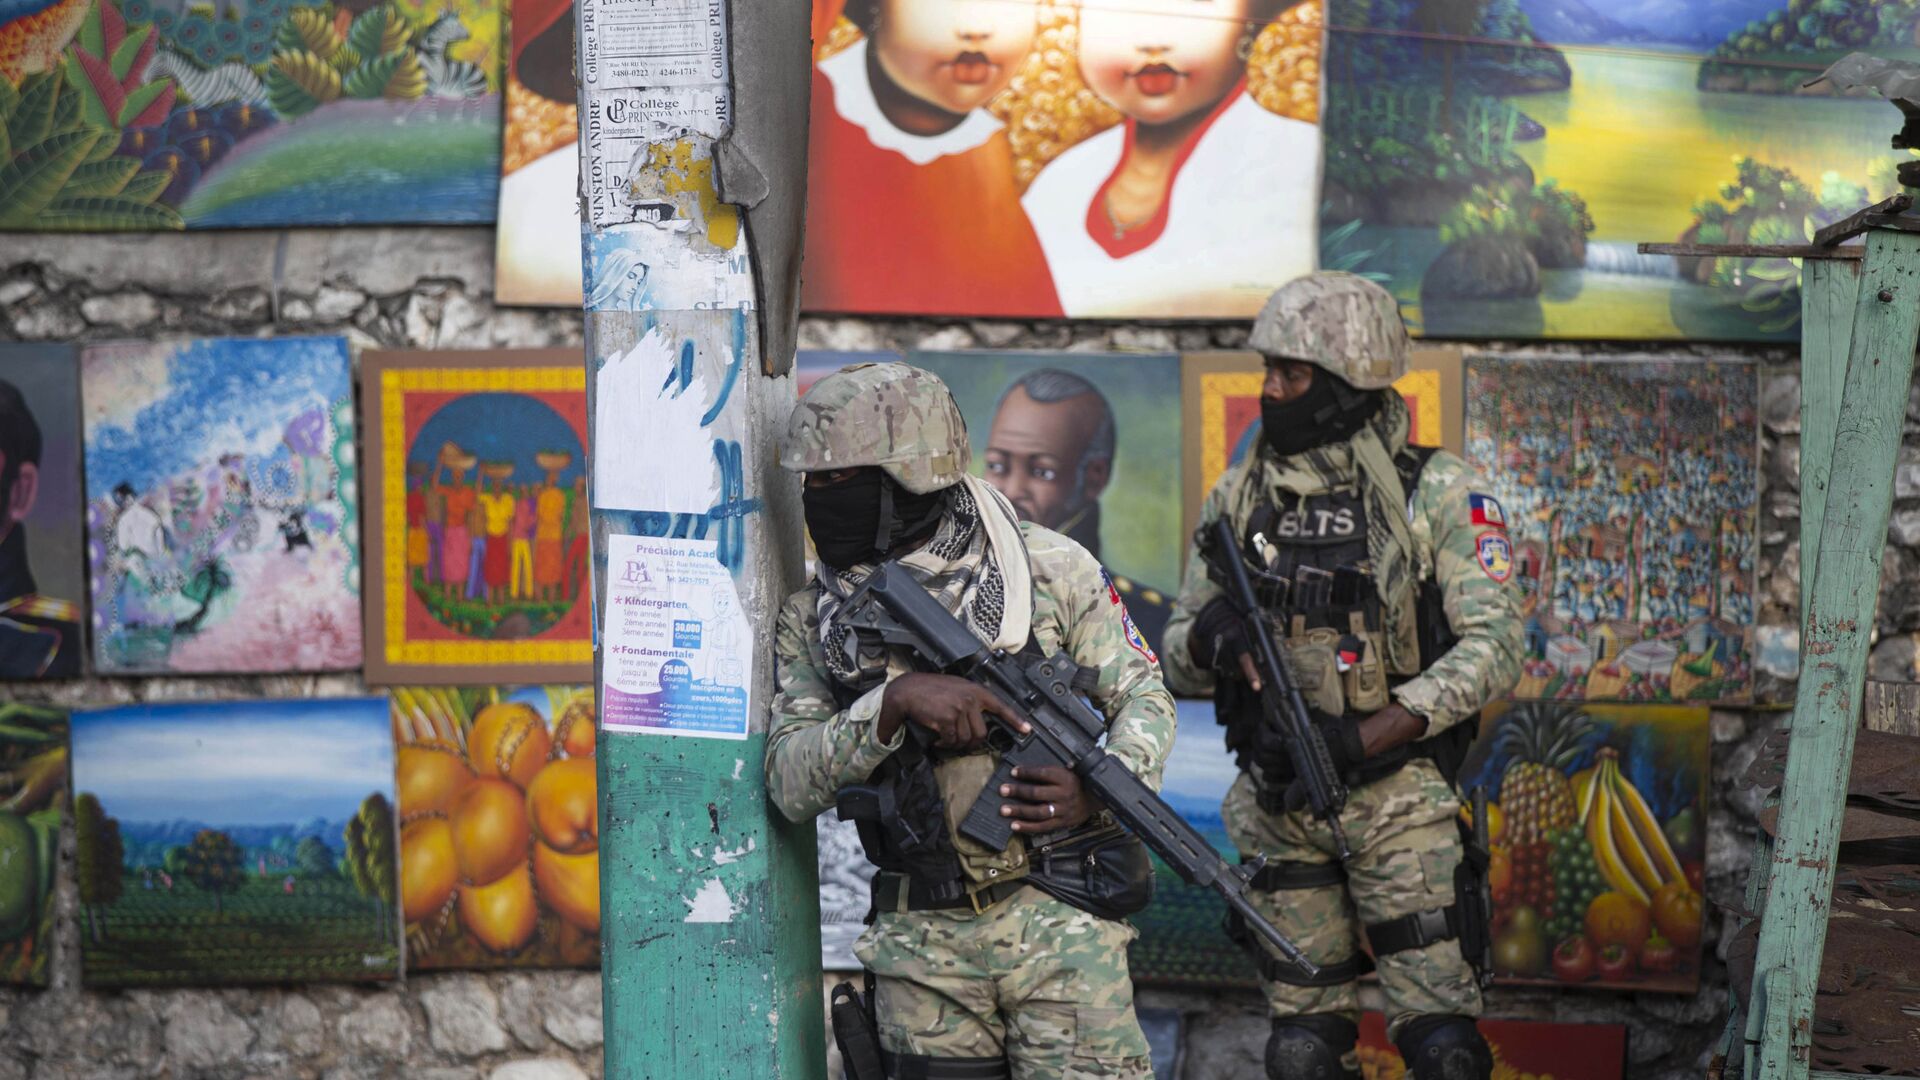 Солдаты патрулируют Петион Вилль, район, где жил покойный президент Гаити Жовенель Мойз, в Порт-о-Пренсе, Гаити - Sputnik Mundo, 1920, 02.12.2021